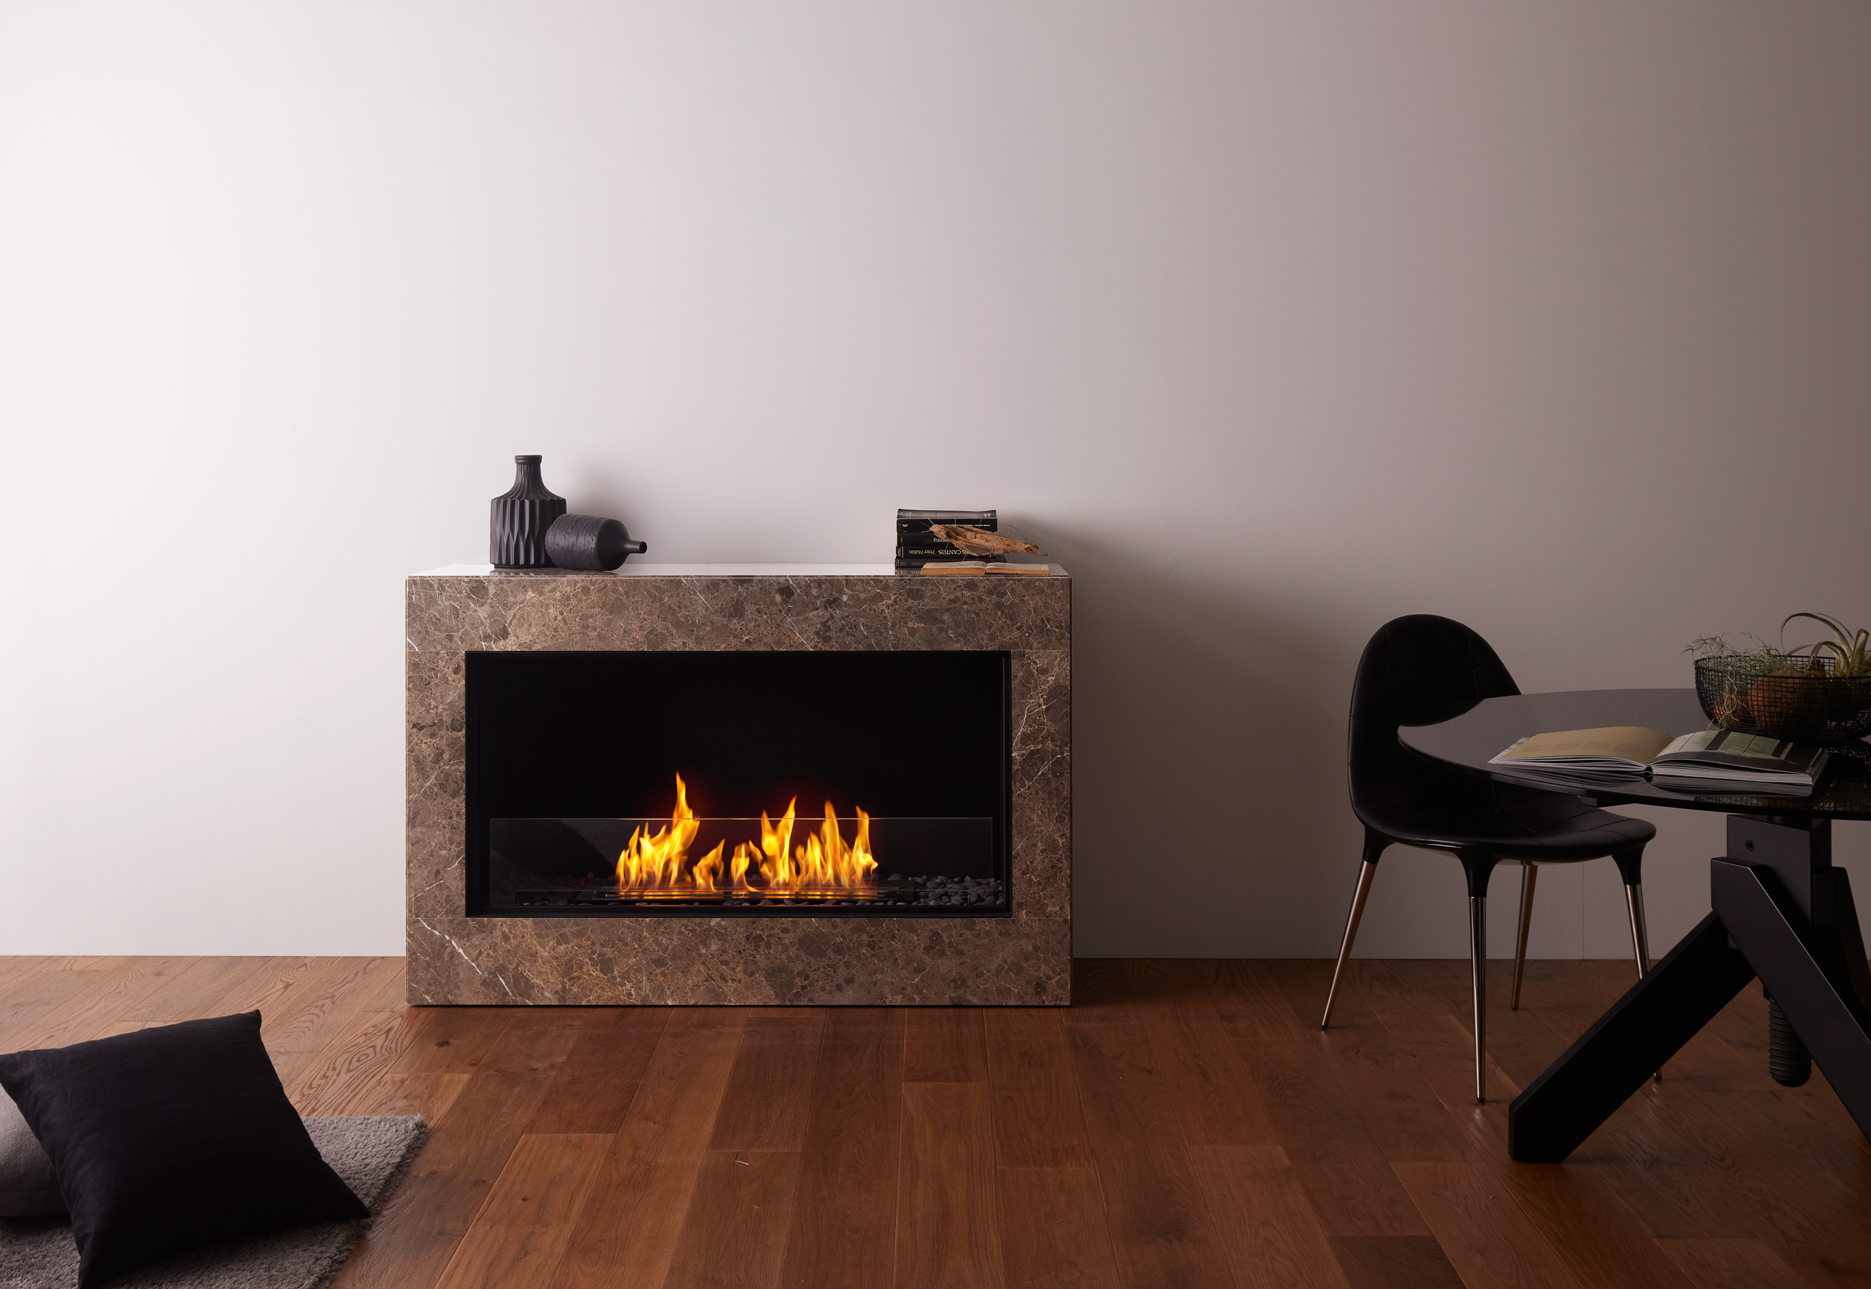 バイオエタノール暖炉「EcoSmart Fire」製品のMODUSの画像。暖炉と違って工事が不要なため、自由な場所に配置できています。